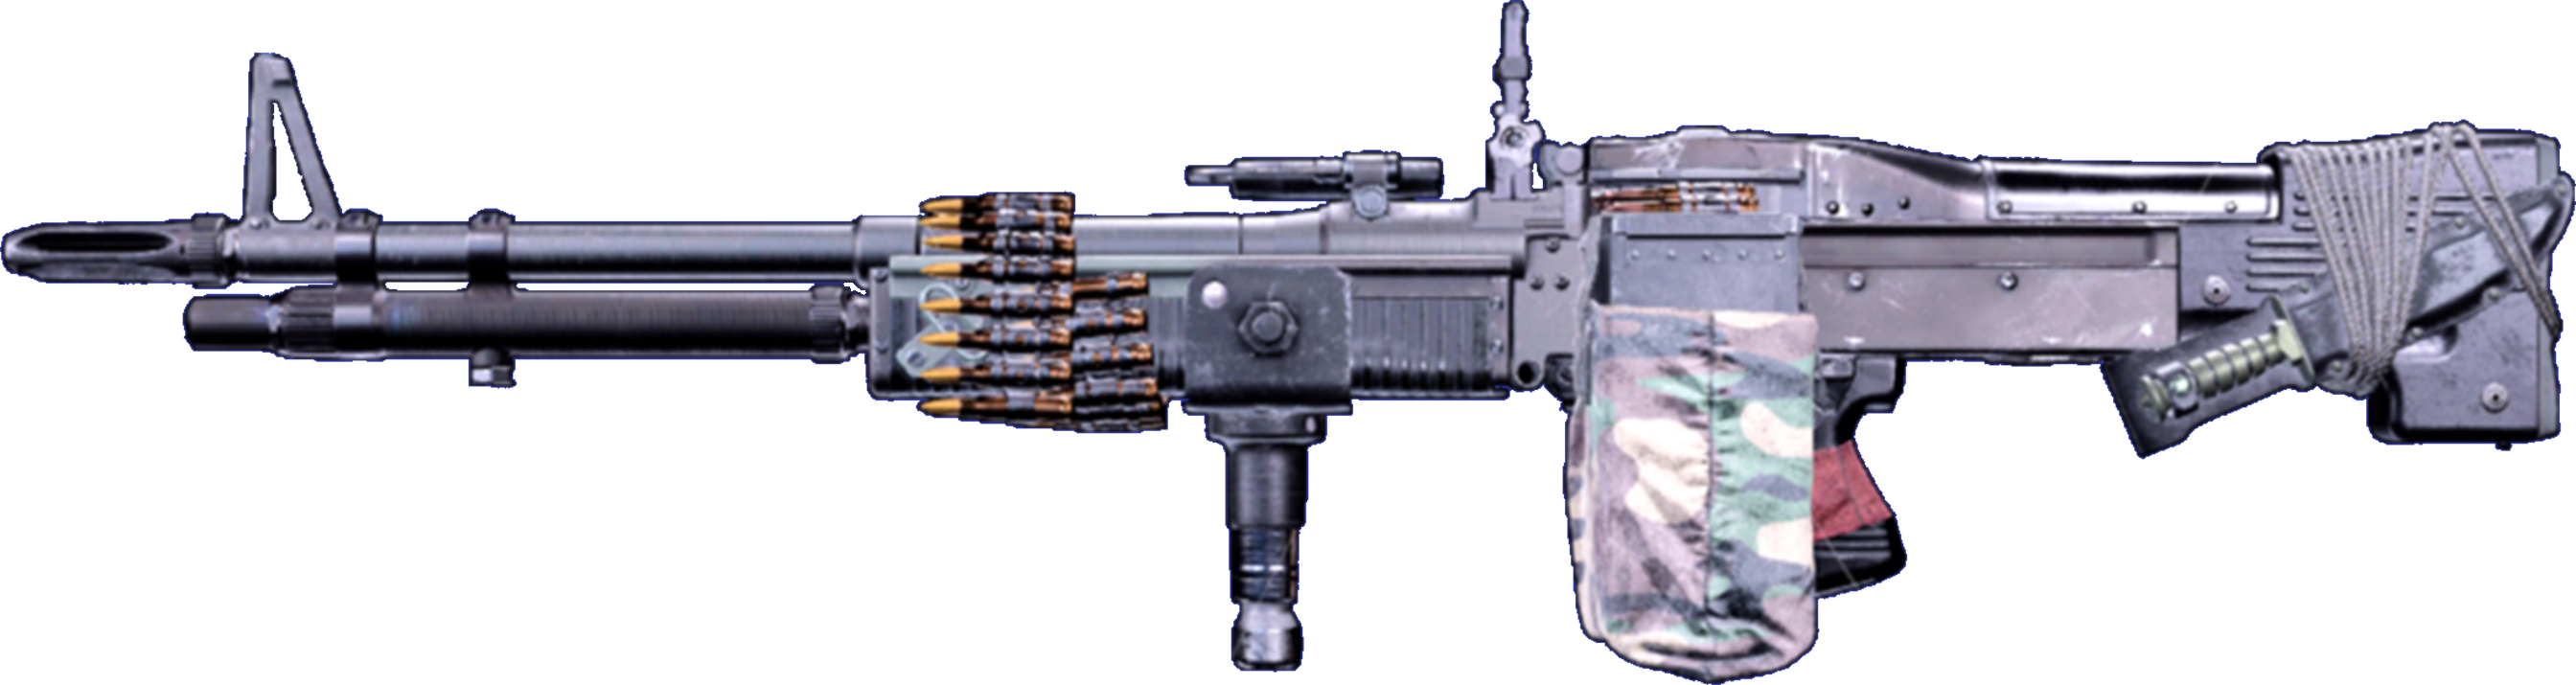 m60 machine gun rambo